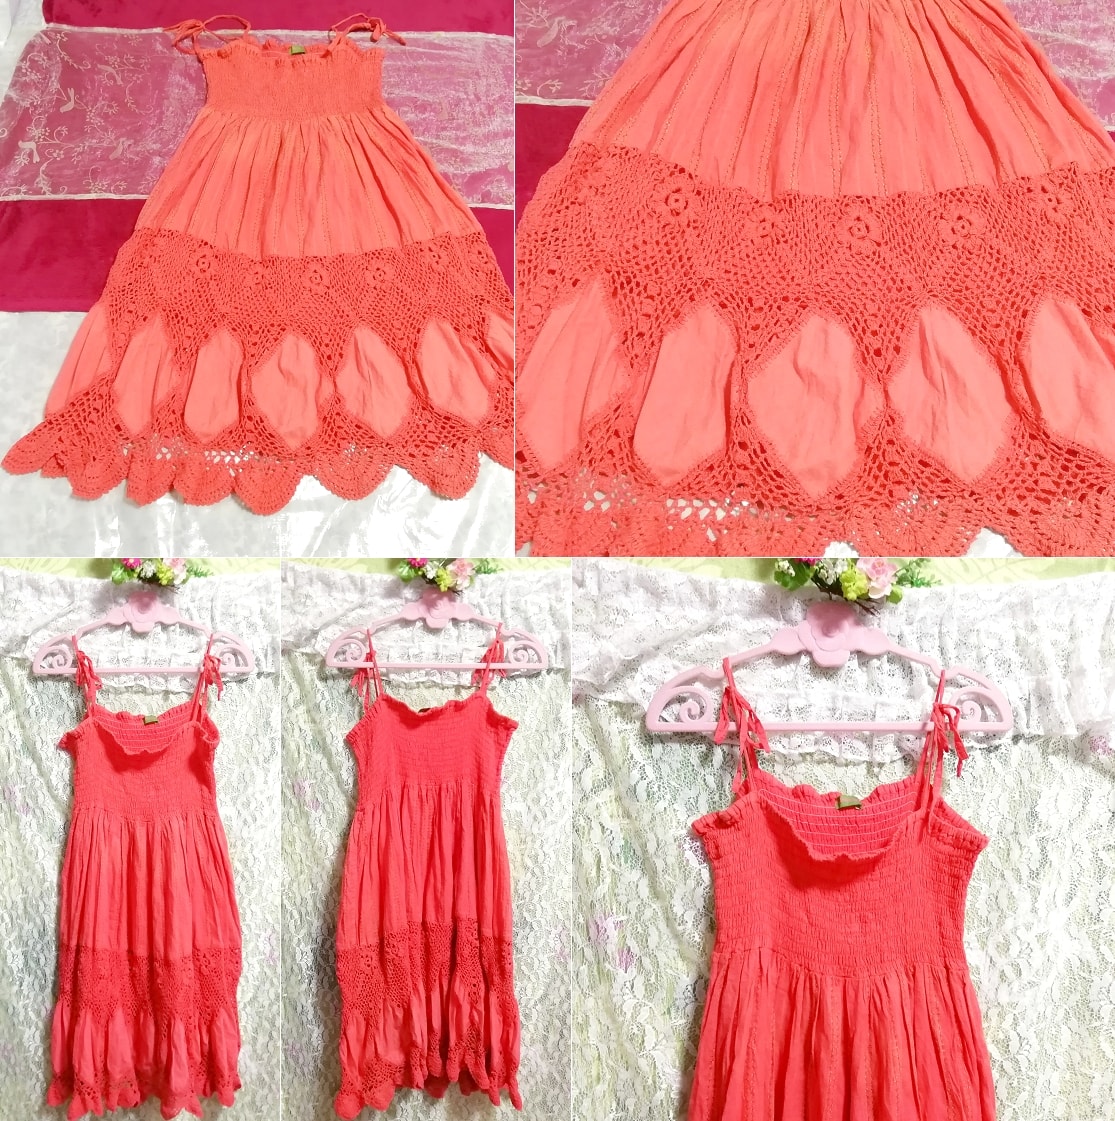 인도산 레드 핑크 100% 면 네글리제 나이트가운 캐미솔 드레스, 무릎길이 스커트, m 사이즈